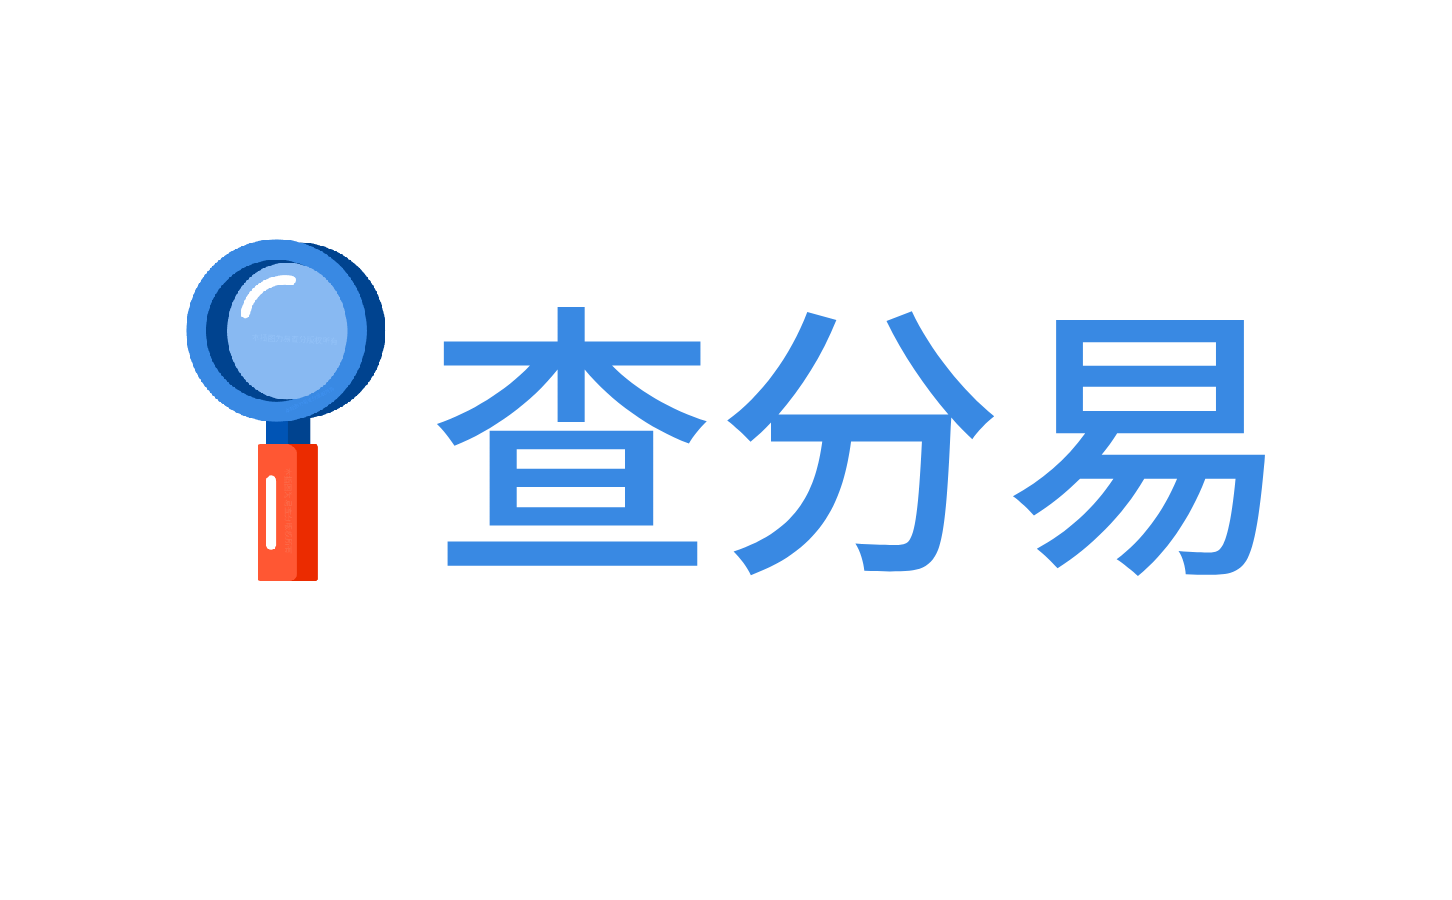 免费发布查分易系统logo图